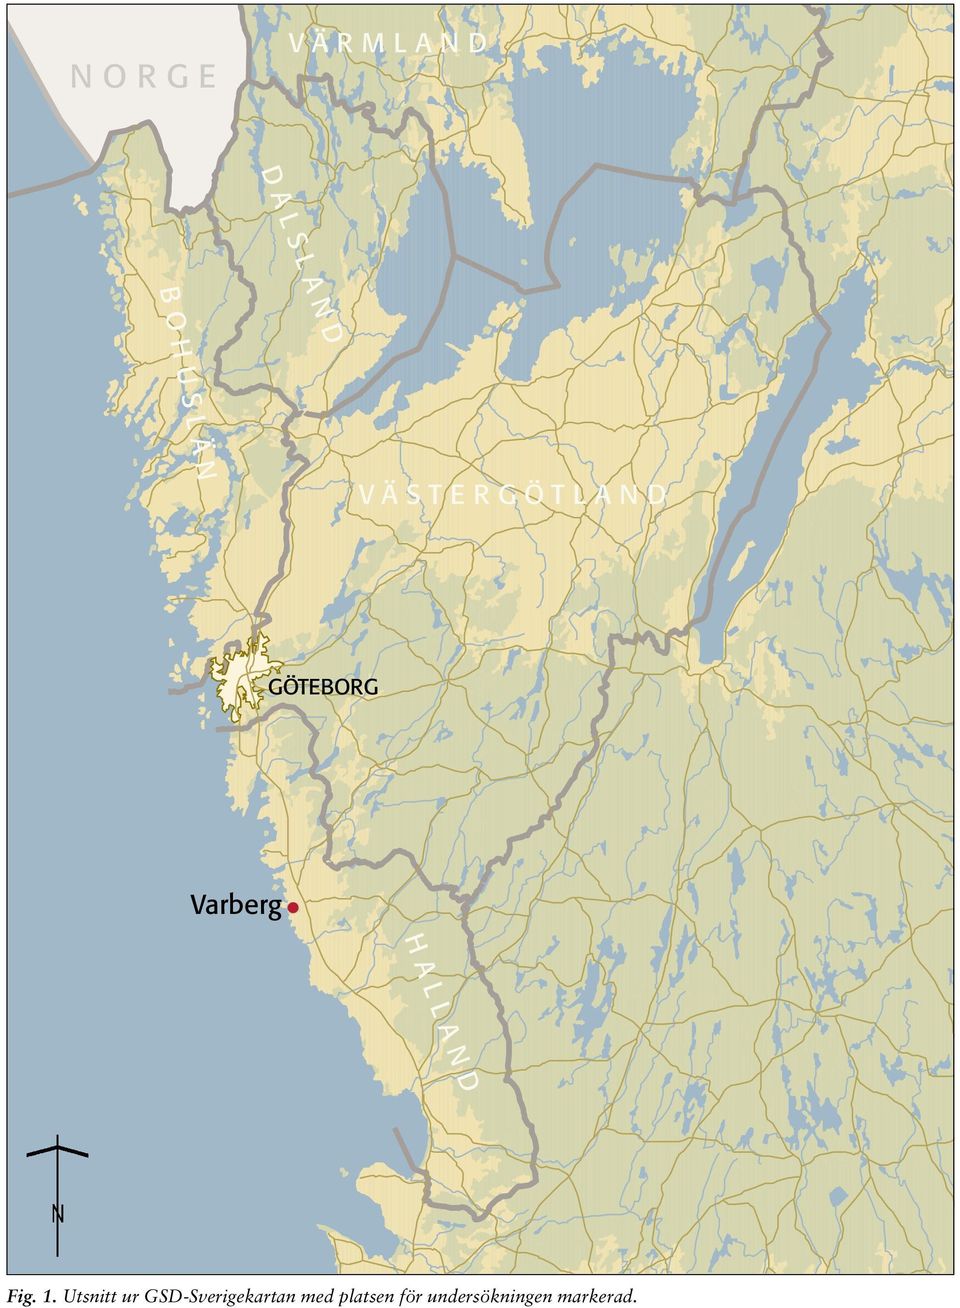 Utsnitt ur GSD-Sverigekartan med platsen för